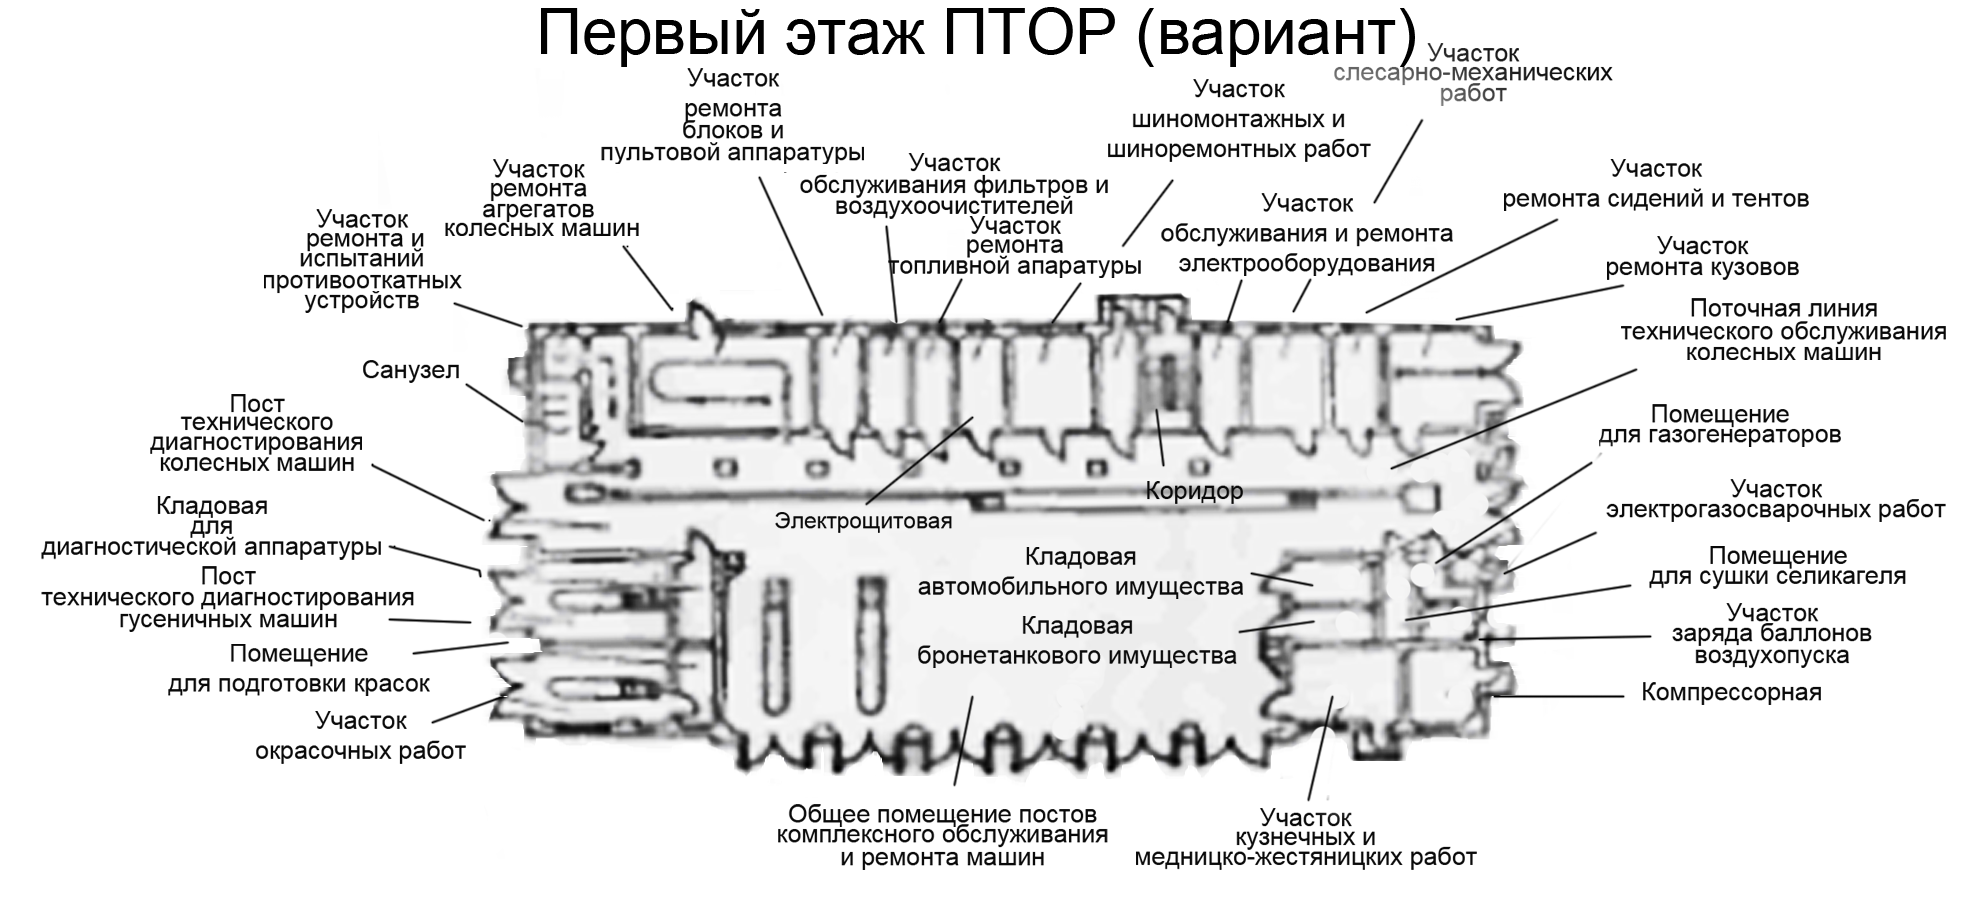 Планировка первого этажа ПТОР